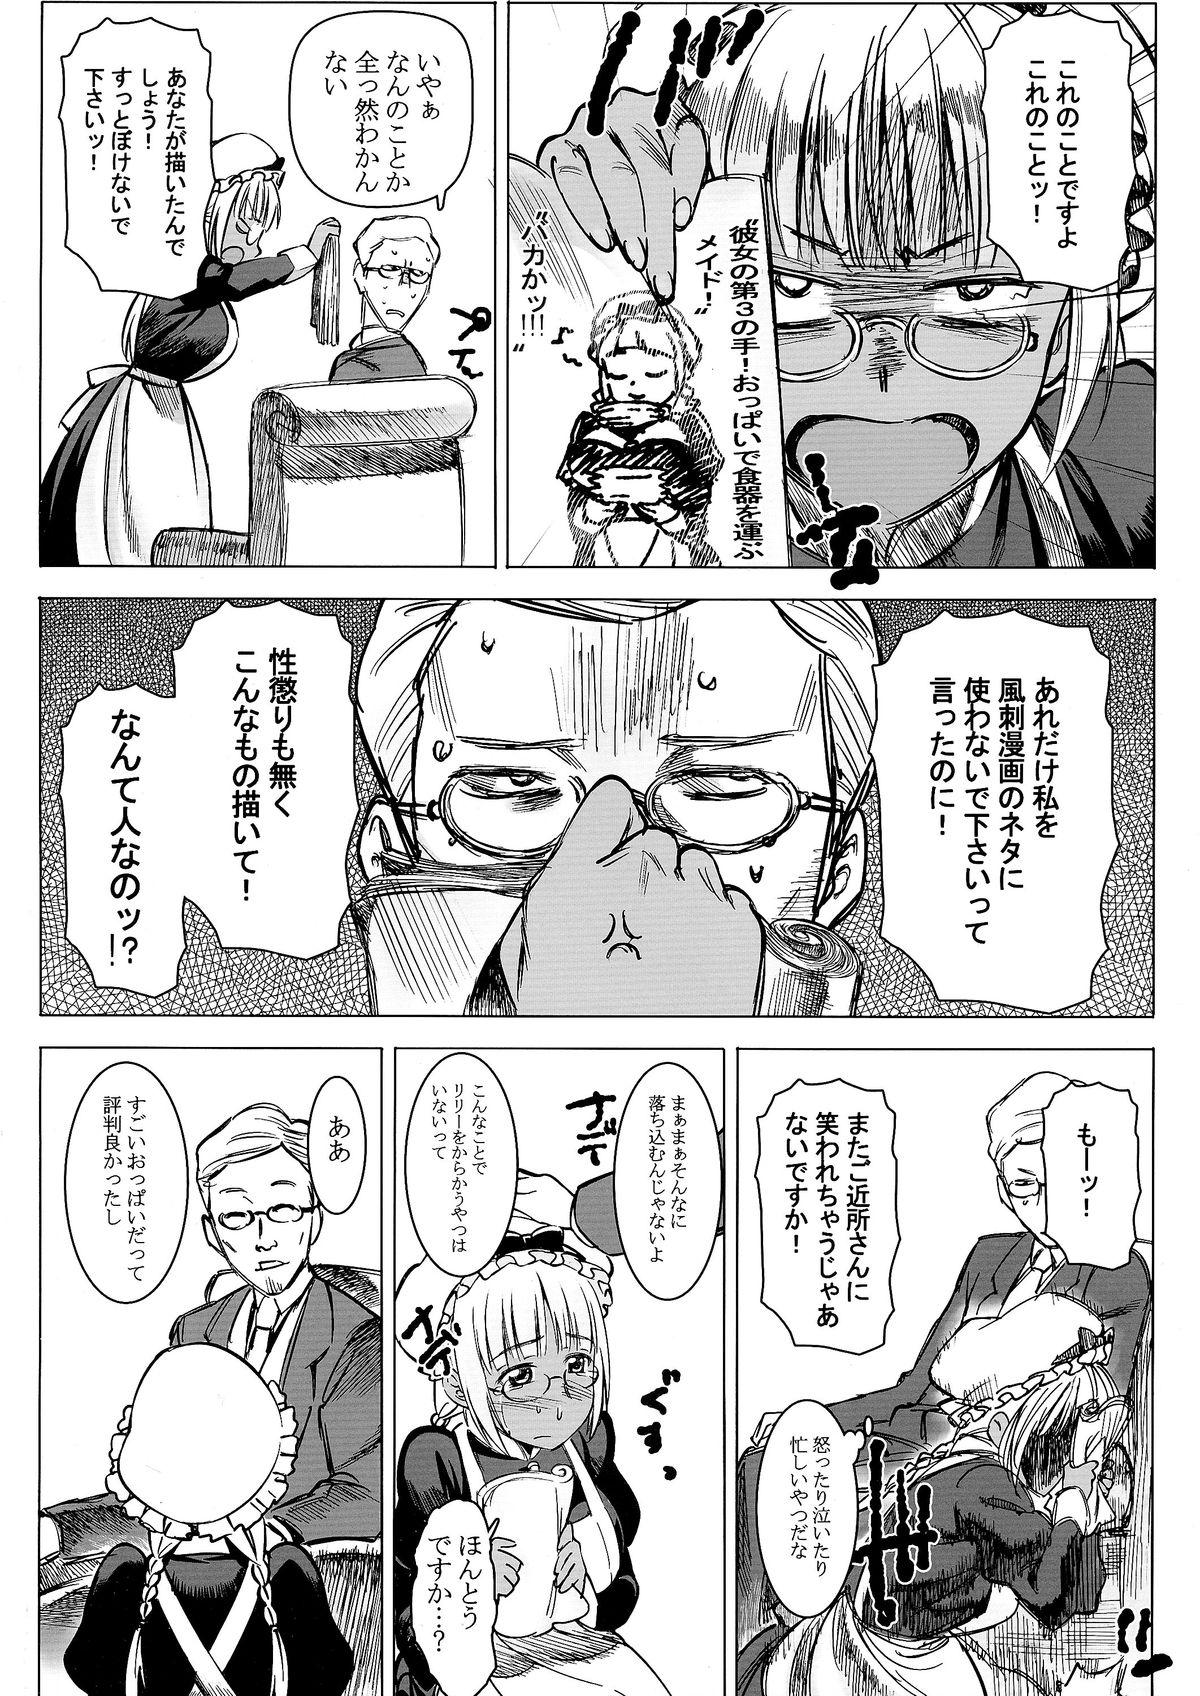 Old Man Kasshoku Kokumaro Funnyuu Maid! Baka ka!!! Gayporn - Page 3